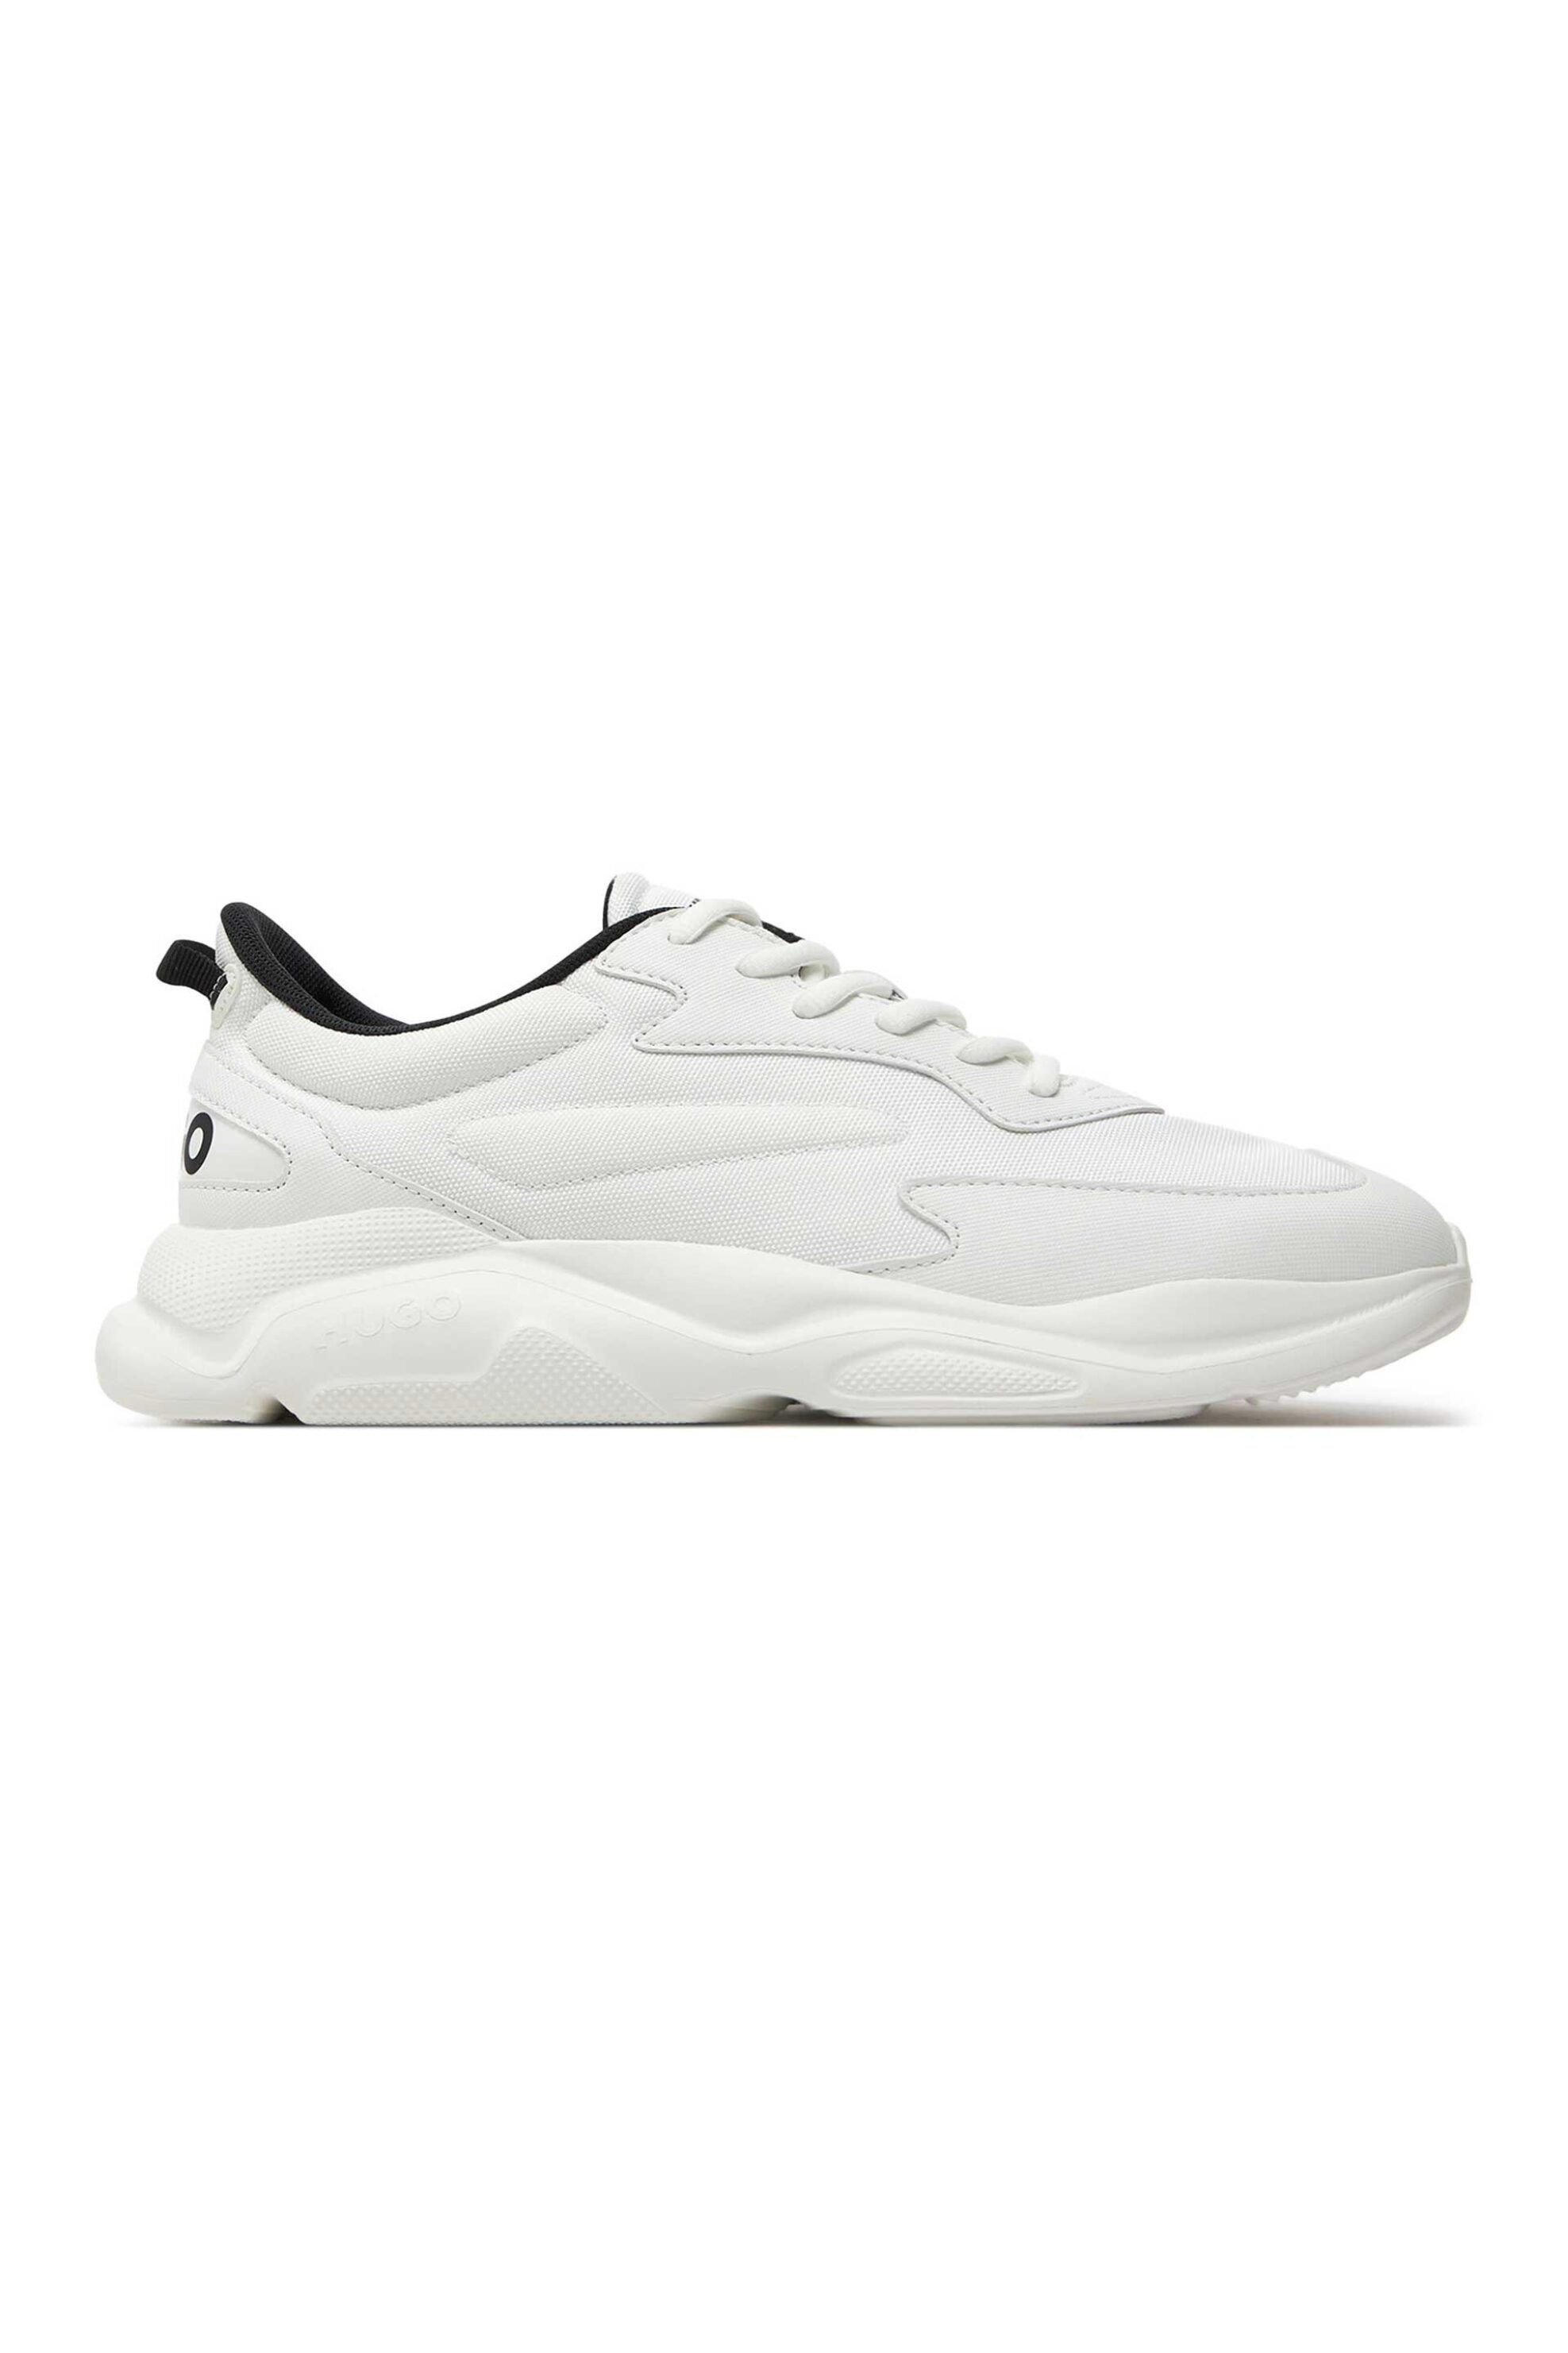 Ανδρική Μόδα > Ανδρικά Παπούτσια > Ανδρικά Sneakers Hugo Boss ανδρικά sneakers "Leon" - 50517096 Λευκό